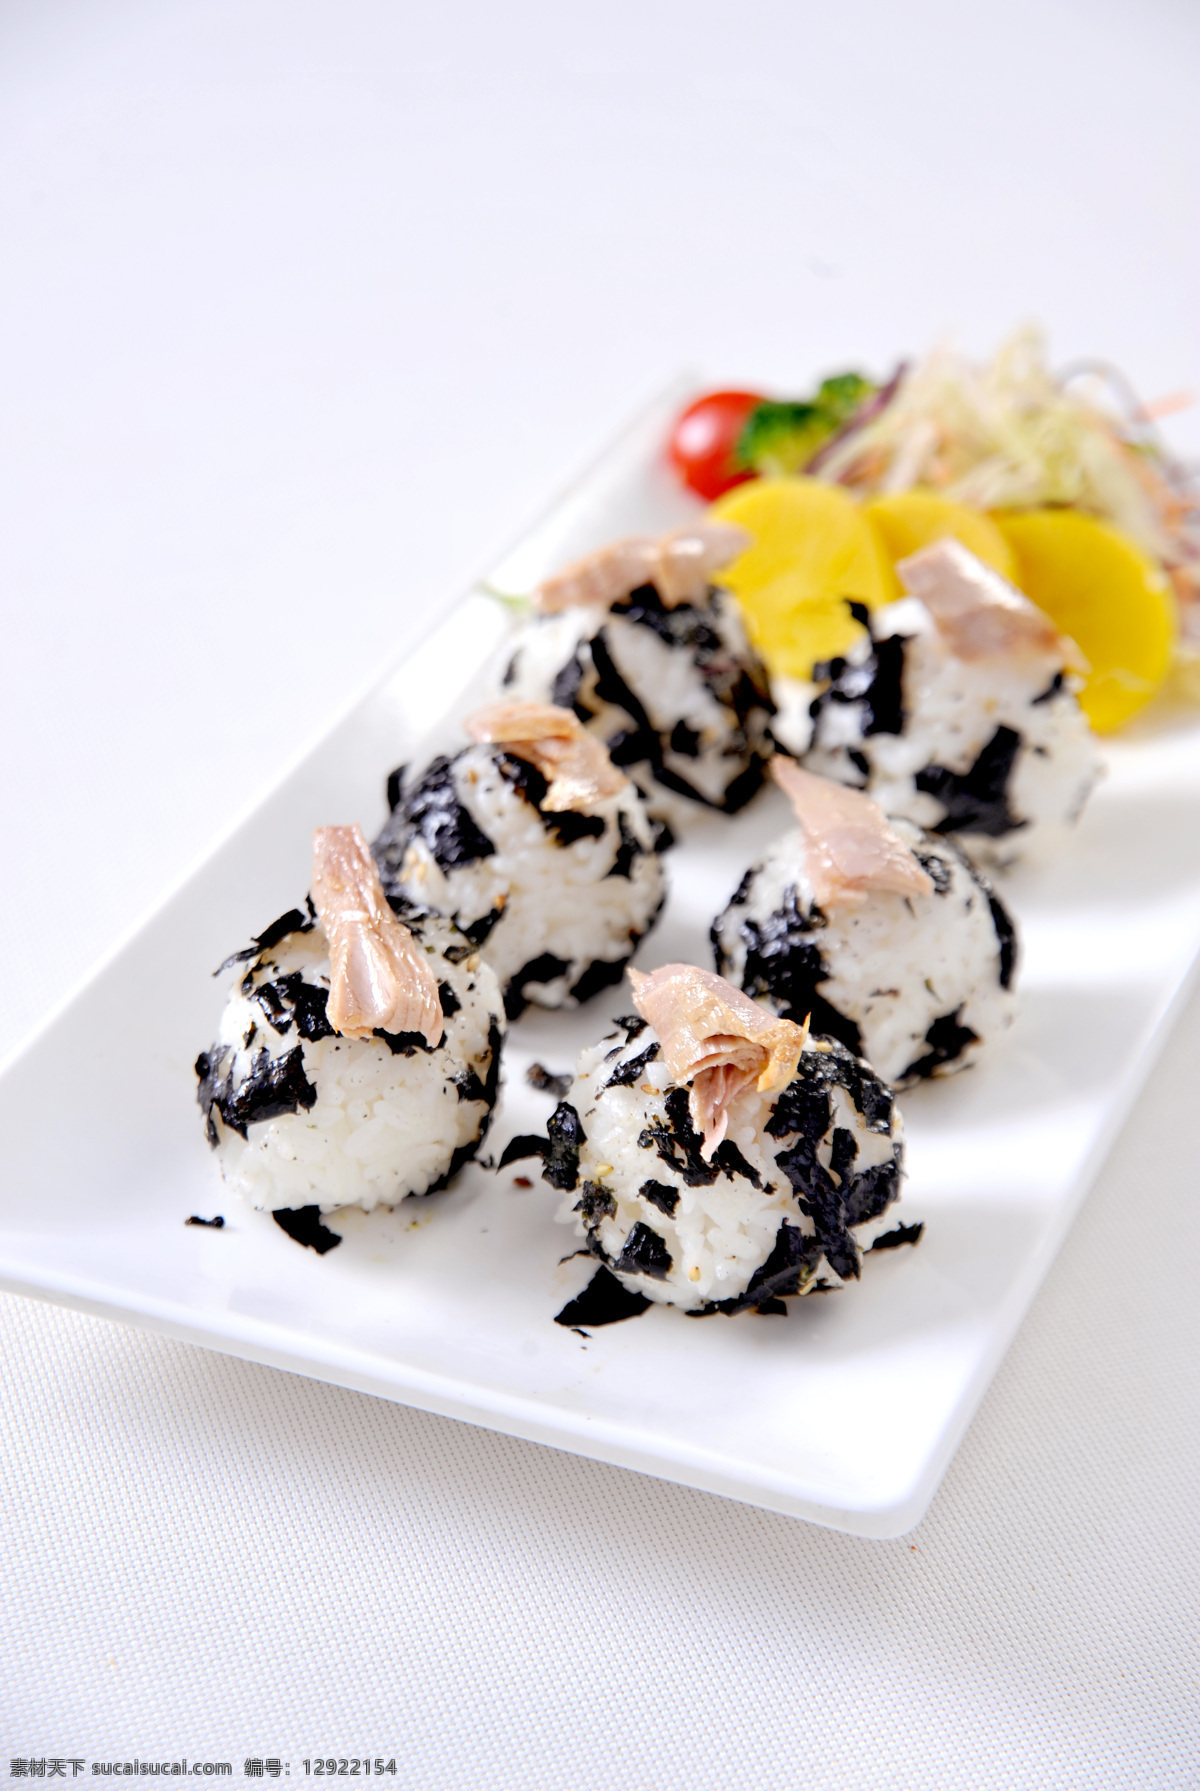 金枪鱼 紫菜 饭团 韩餐 海苔 摄影菜品 餐饮美食 传统美食